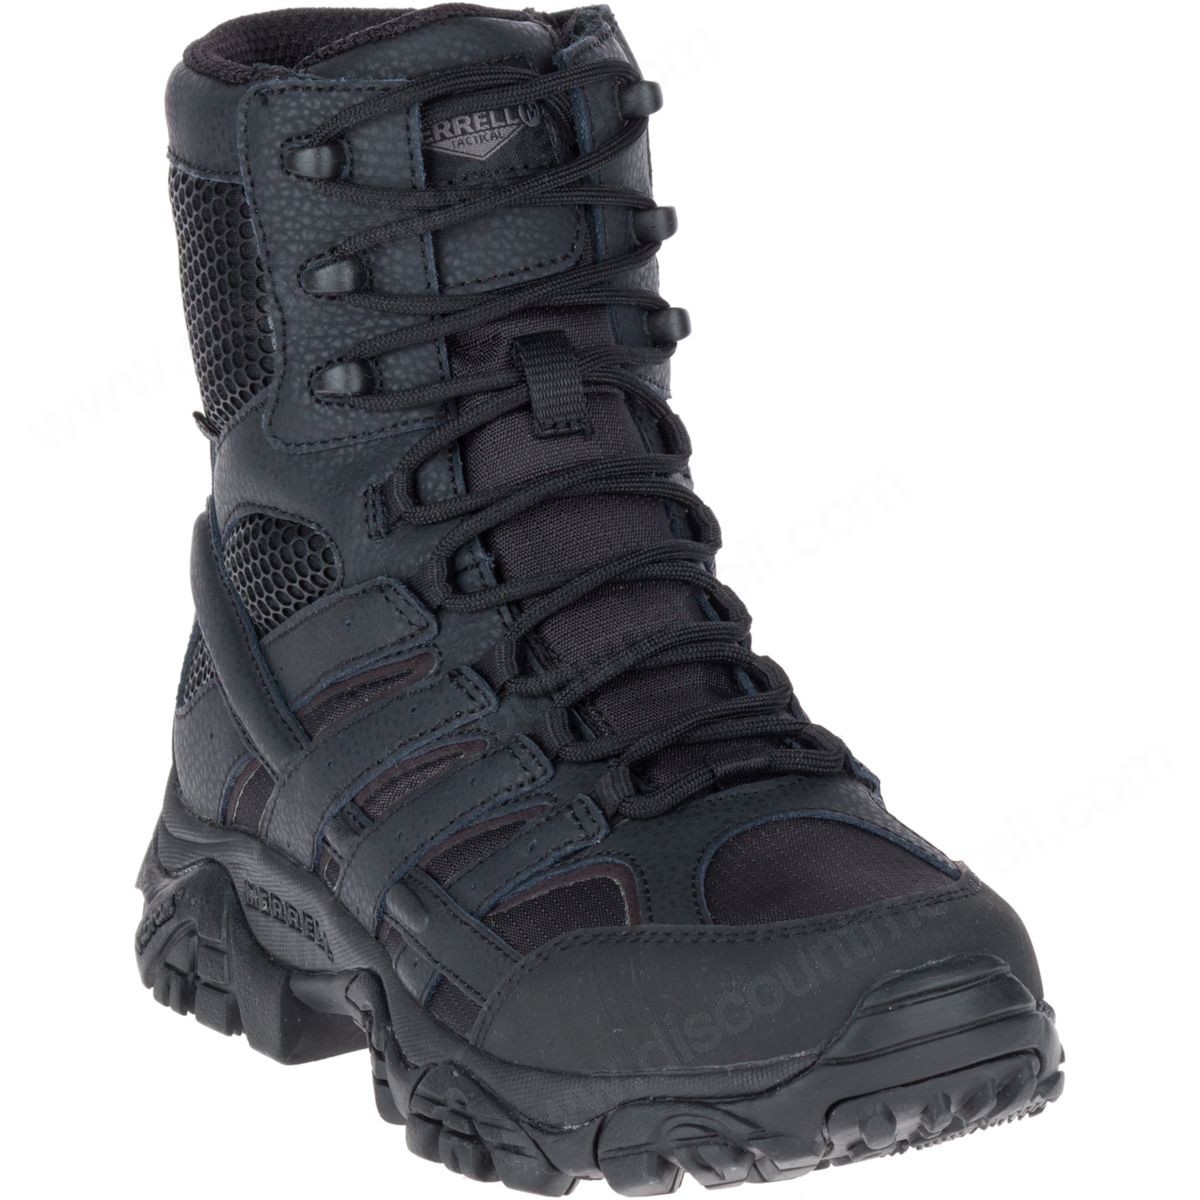 Merrell Men's Moab " Tactical Waterproof Boot Black - -3